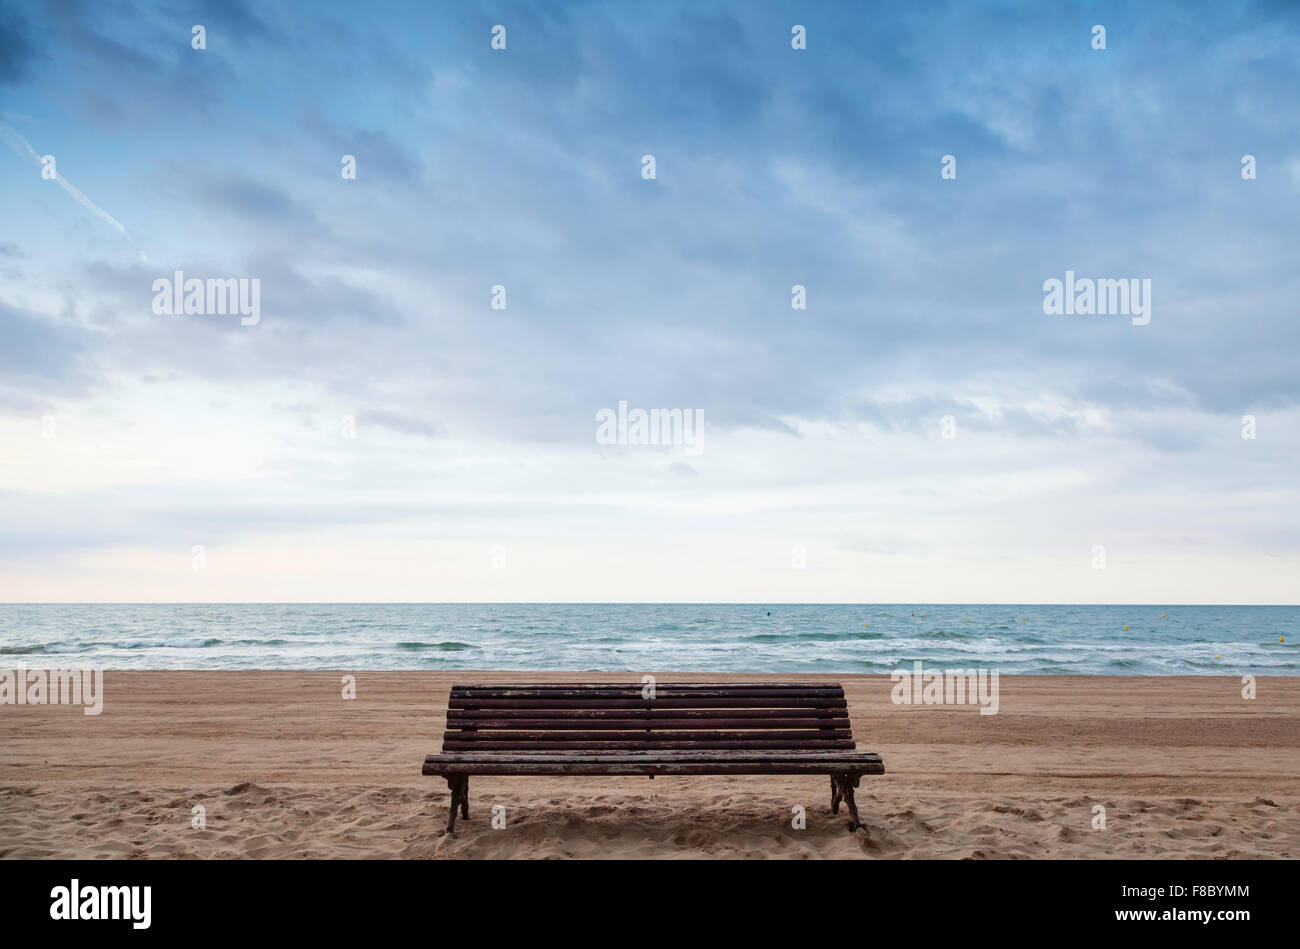 Vieux banc vide se dresse sur une plage de sable, mer Méditerranée, Côte d'Espagne Banque D'Images